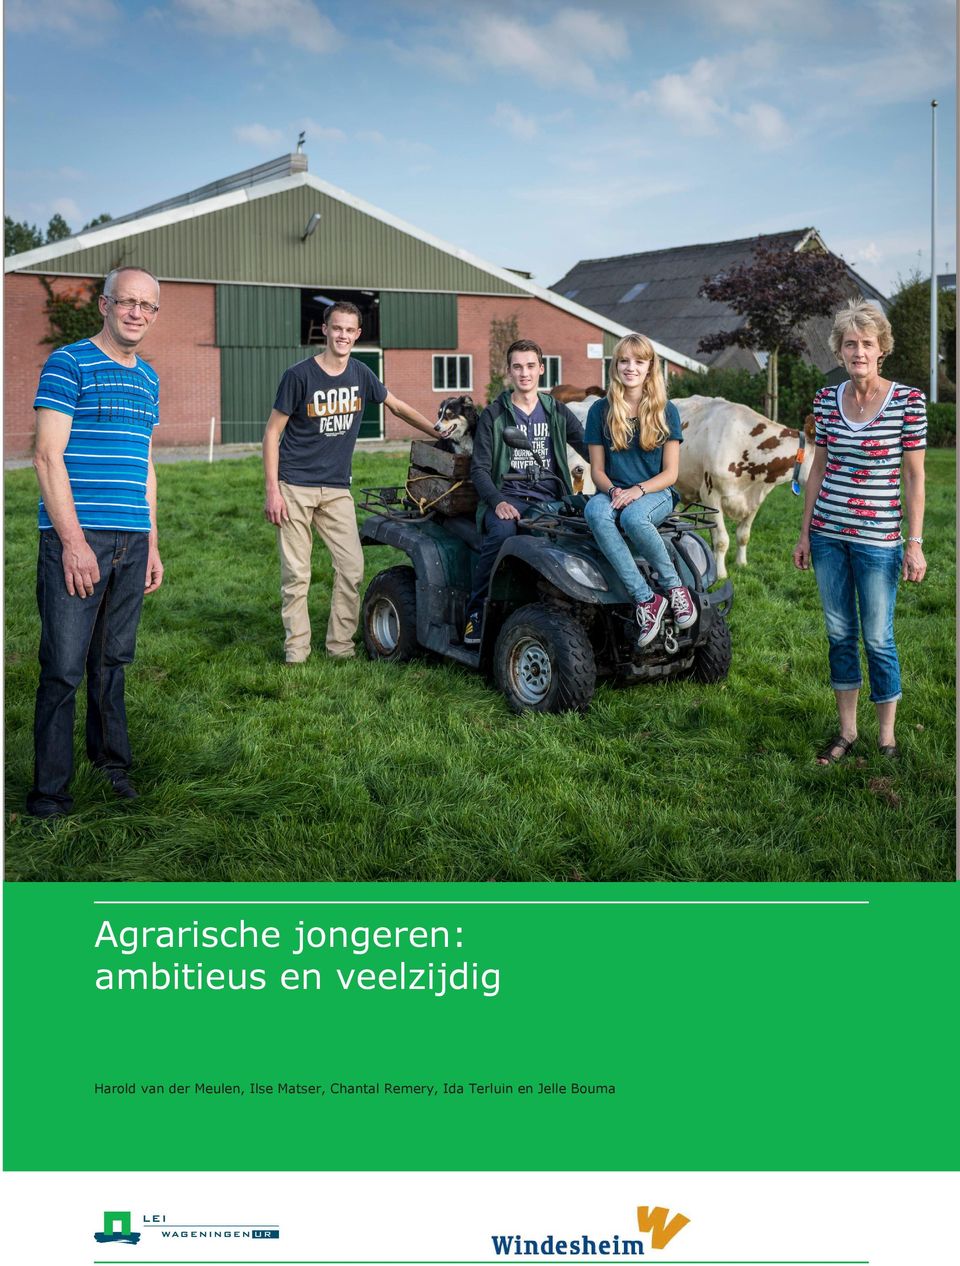 nl beleid en besluitvorming, en dragen uiteindelijk bij aan een duurzamere wereld. Het www.wageningenur.nl/lei LEI maakt deel uit van Wageningen UR (University & Research centre).